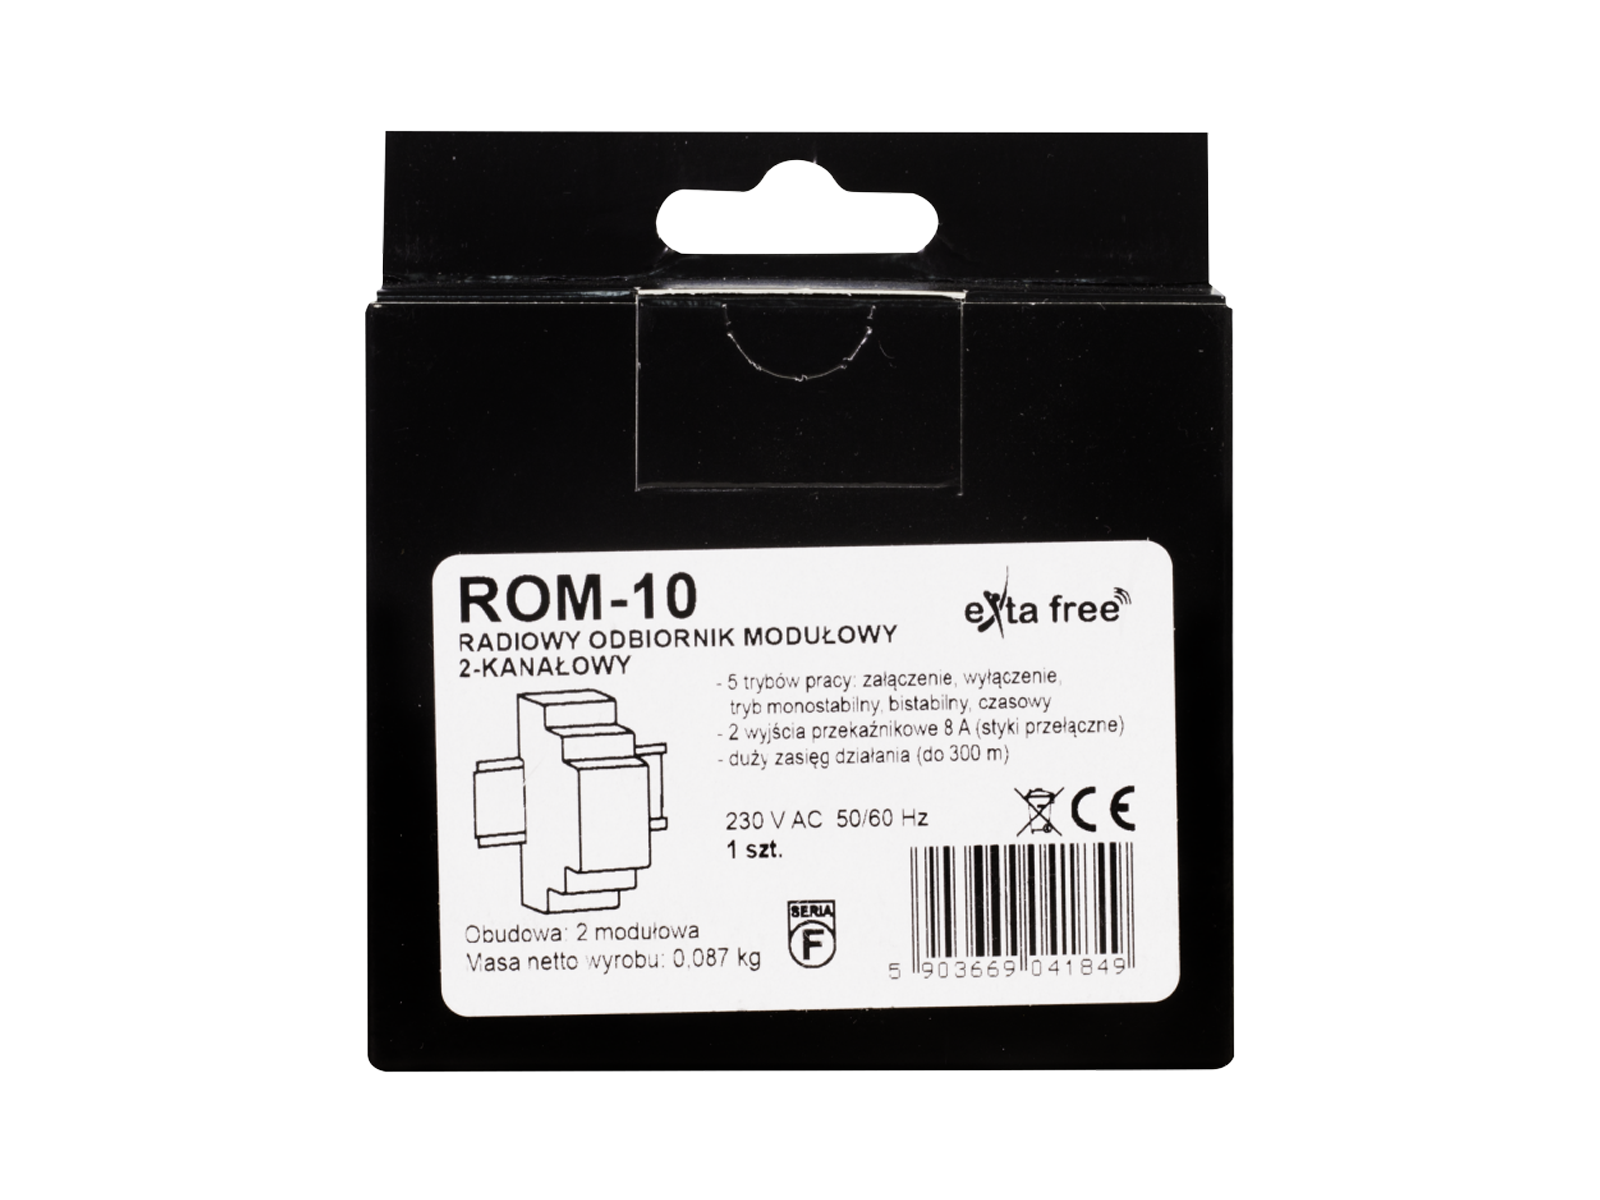 Rádiový přijímač ROM-10 modulový